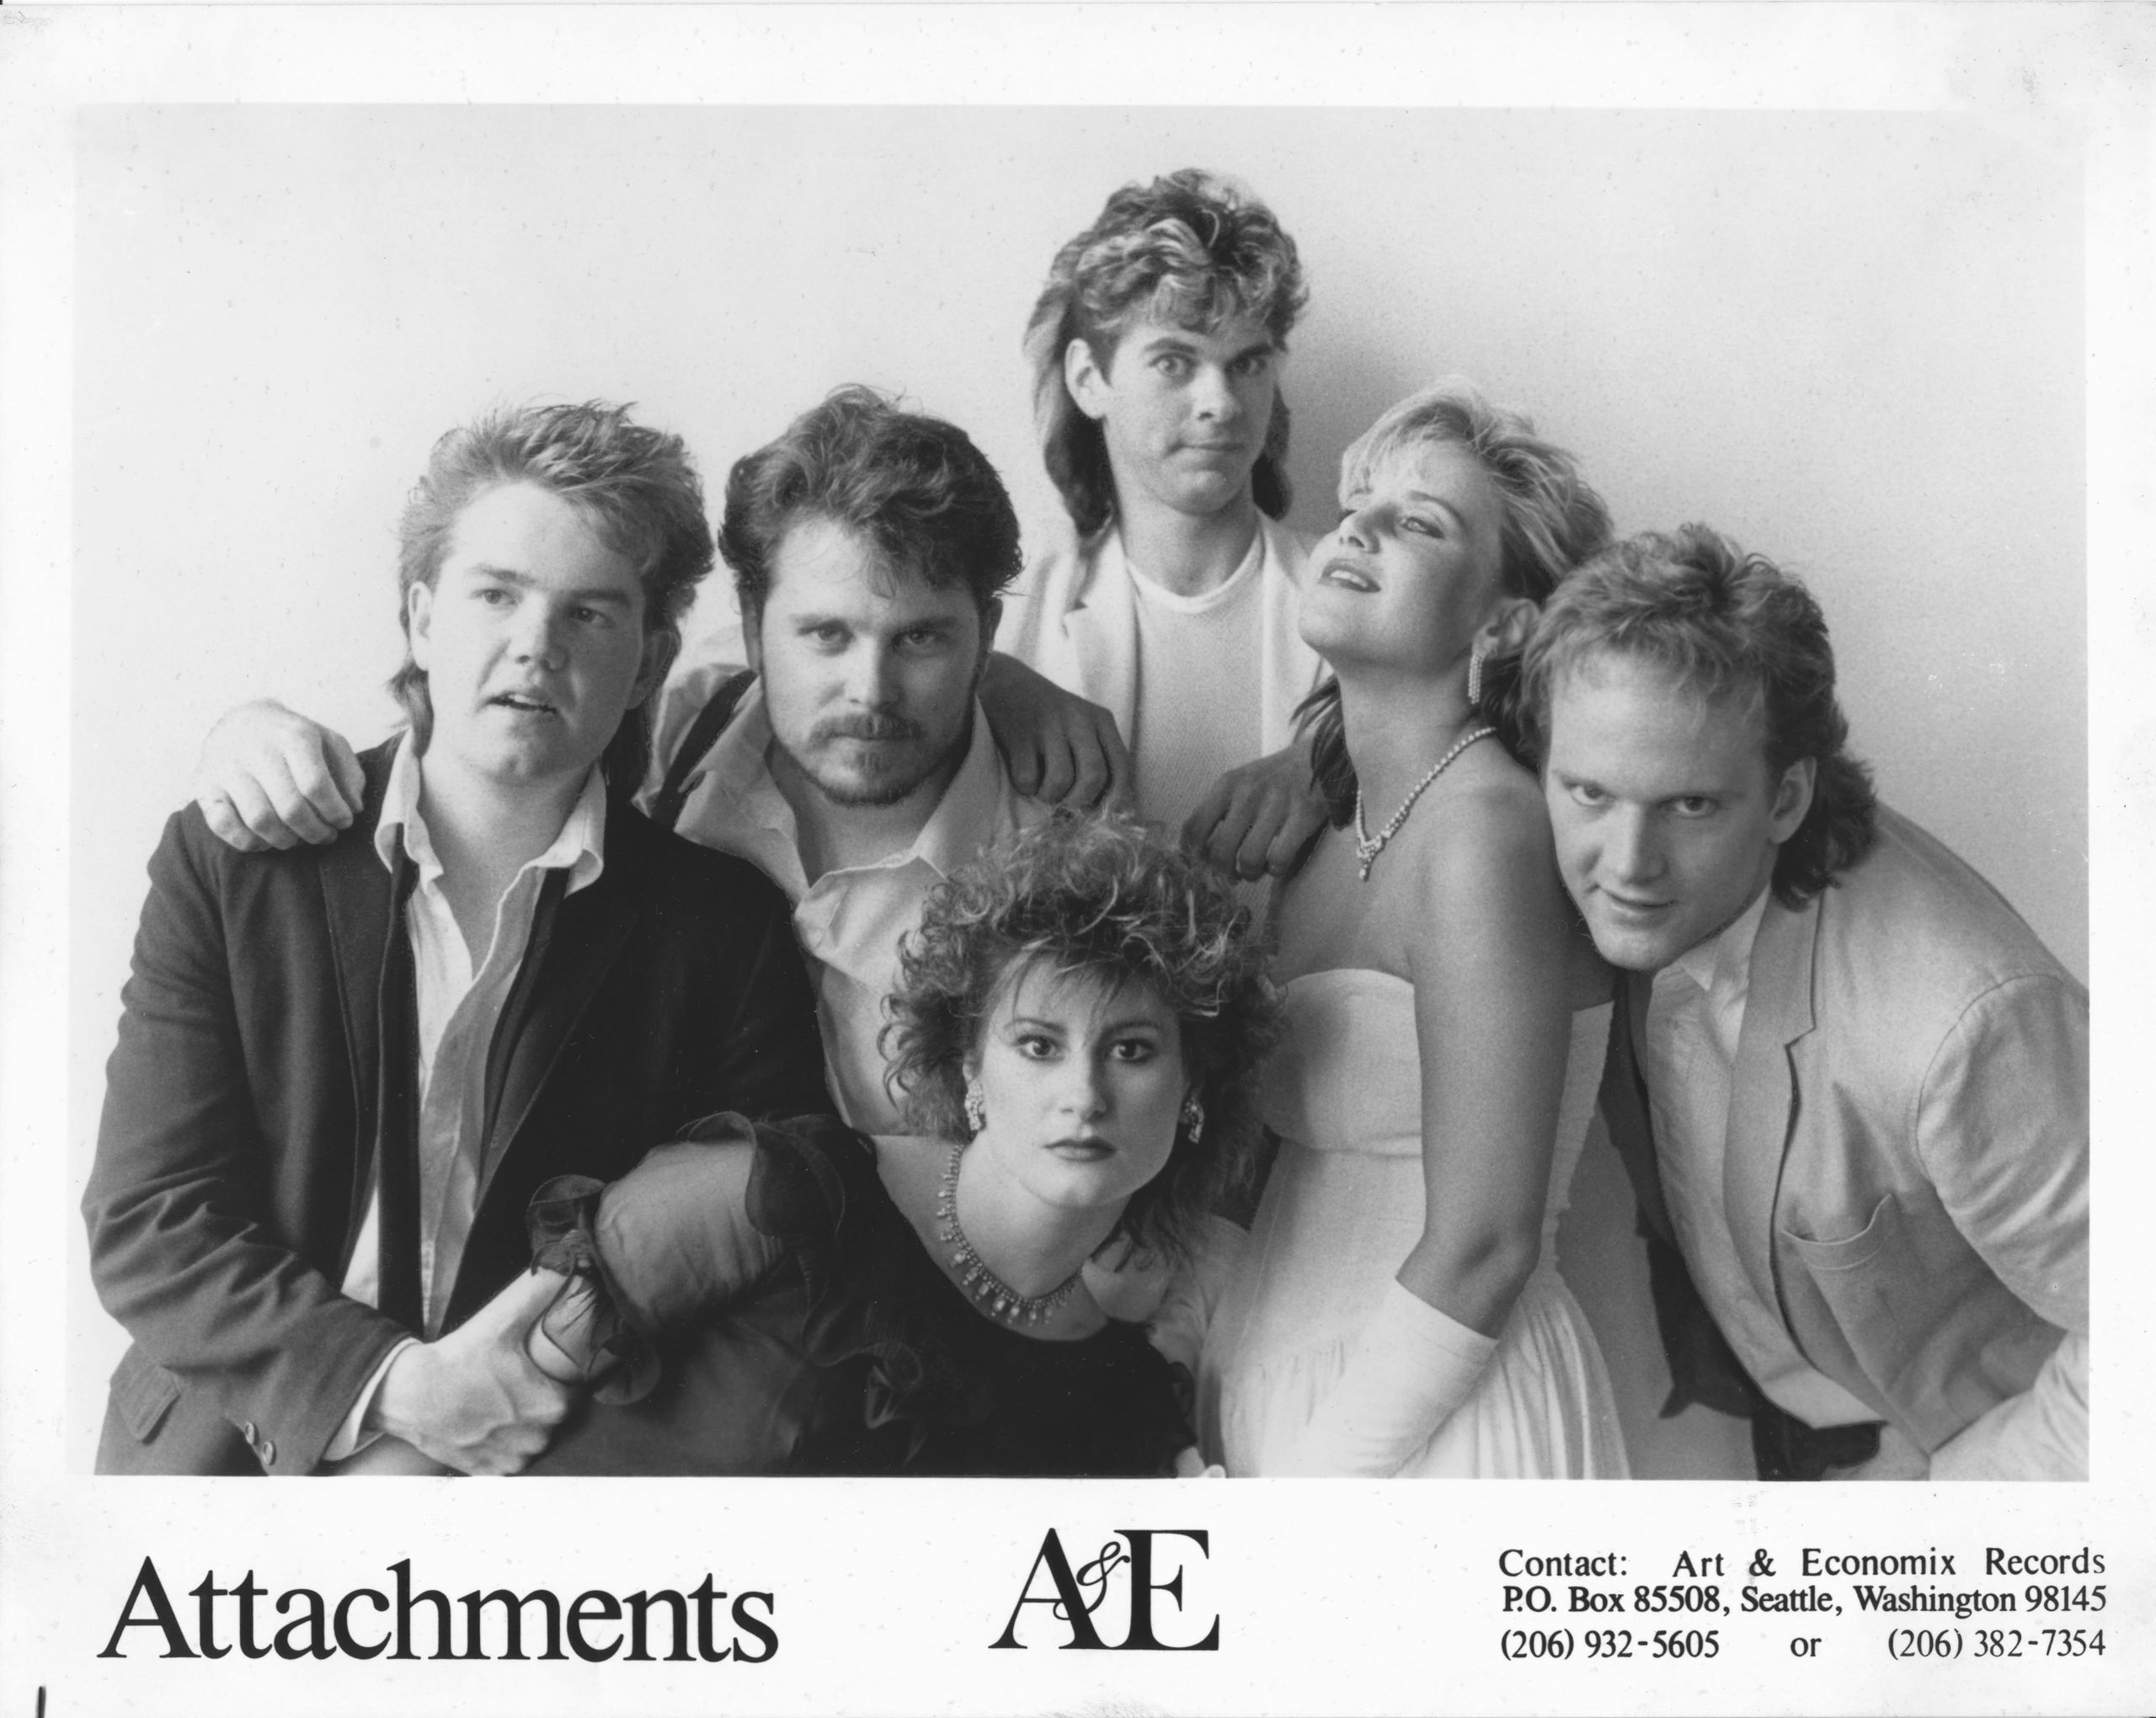 Attachments promo 8x10, 1985